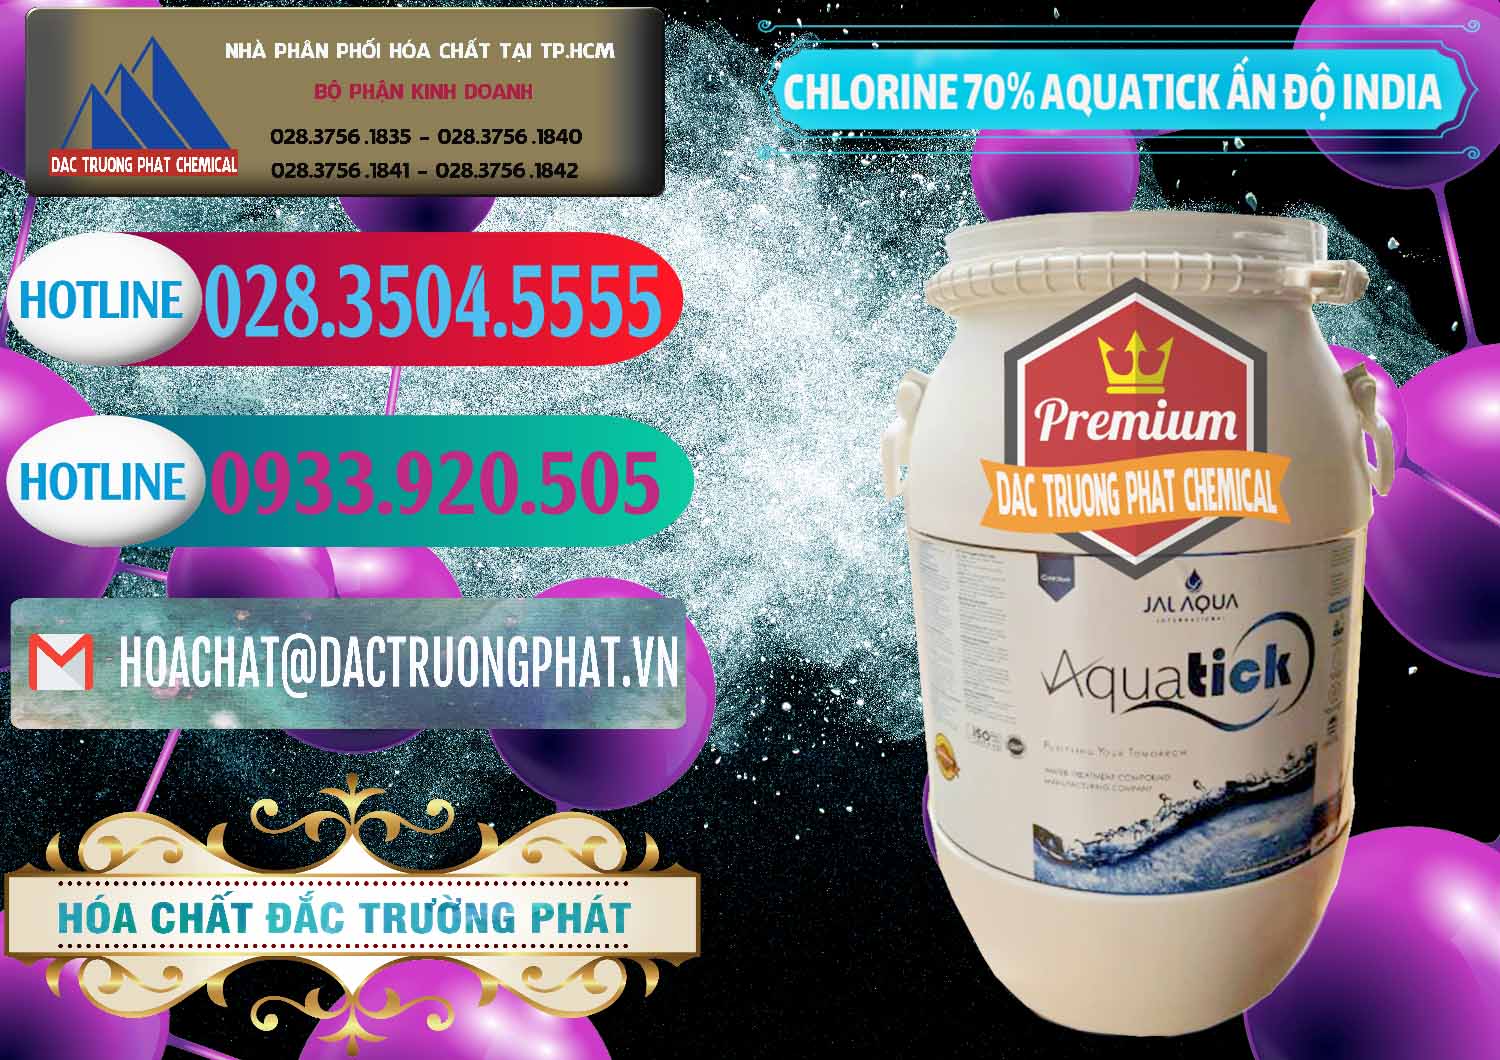 Cty chuyên cung ứng & bán Chlorine – Clorin 70% Aquatick Jal Aqua Ấn Độ India - 0215 - Chuyên kinh doanh & cung cấp hóa chất tại TP.HCM - truongphat.vn